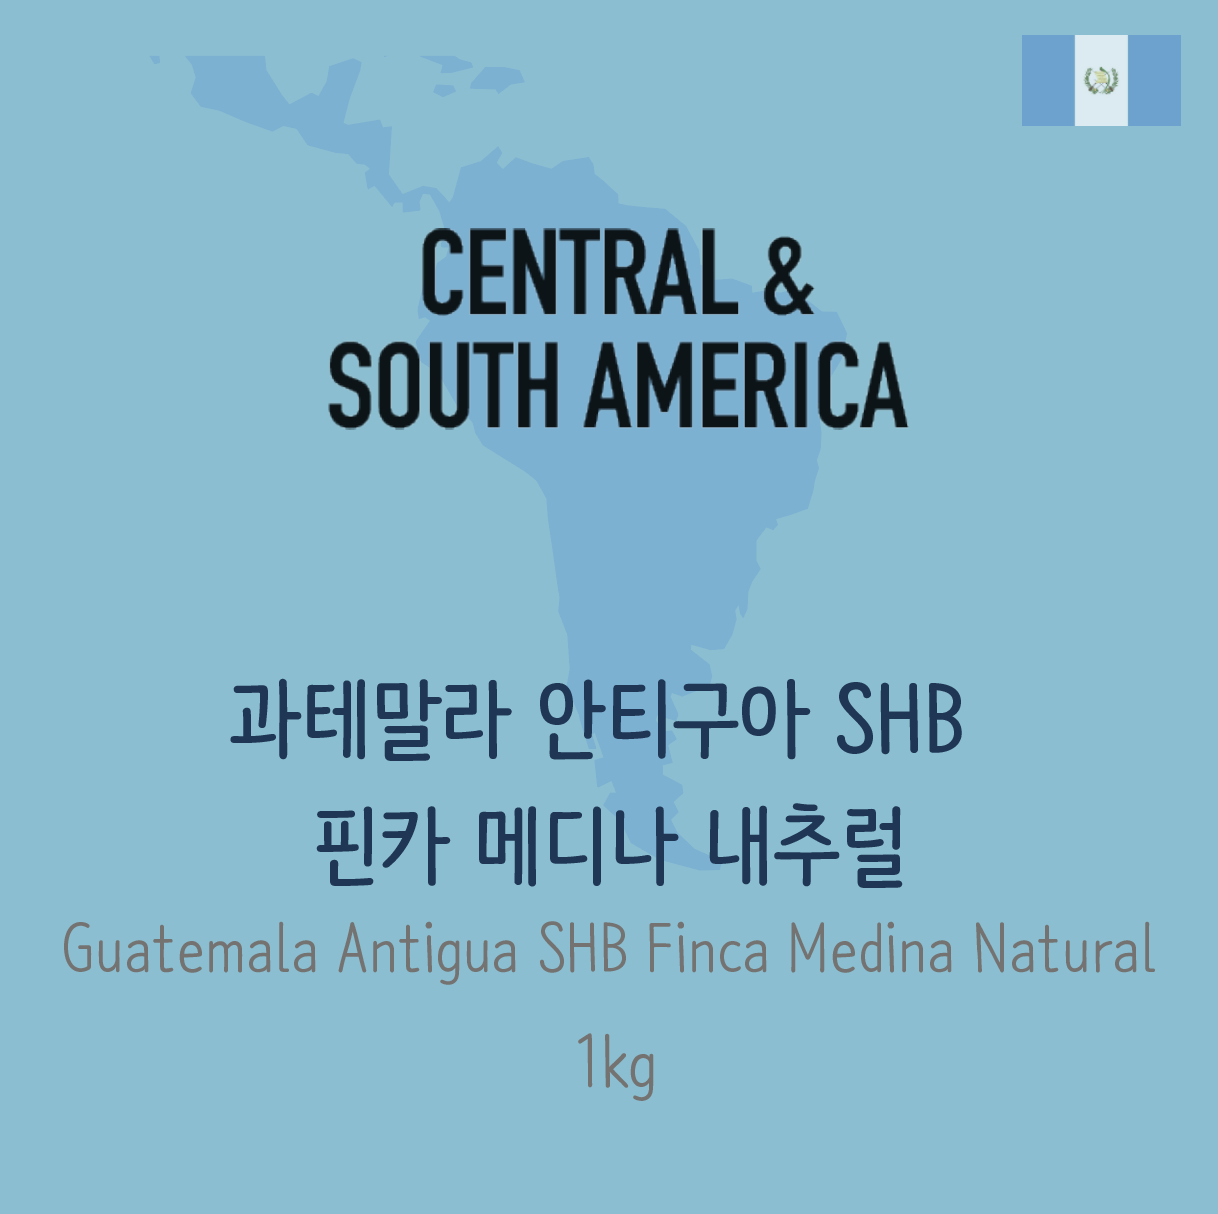 [생두] 과테말라 안티구아 SHB 핀카 메디나 내추럴 (Guatemala Antigua SHB Finca Medina Natural) 1kg